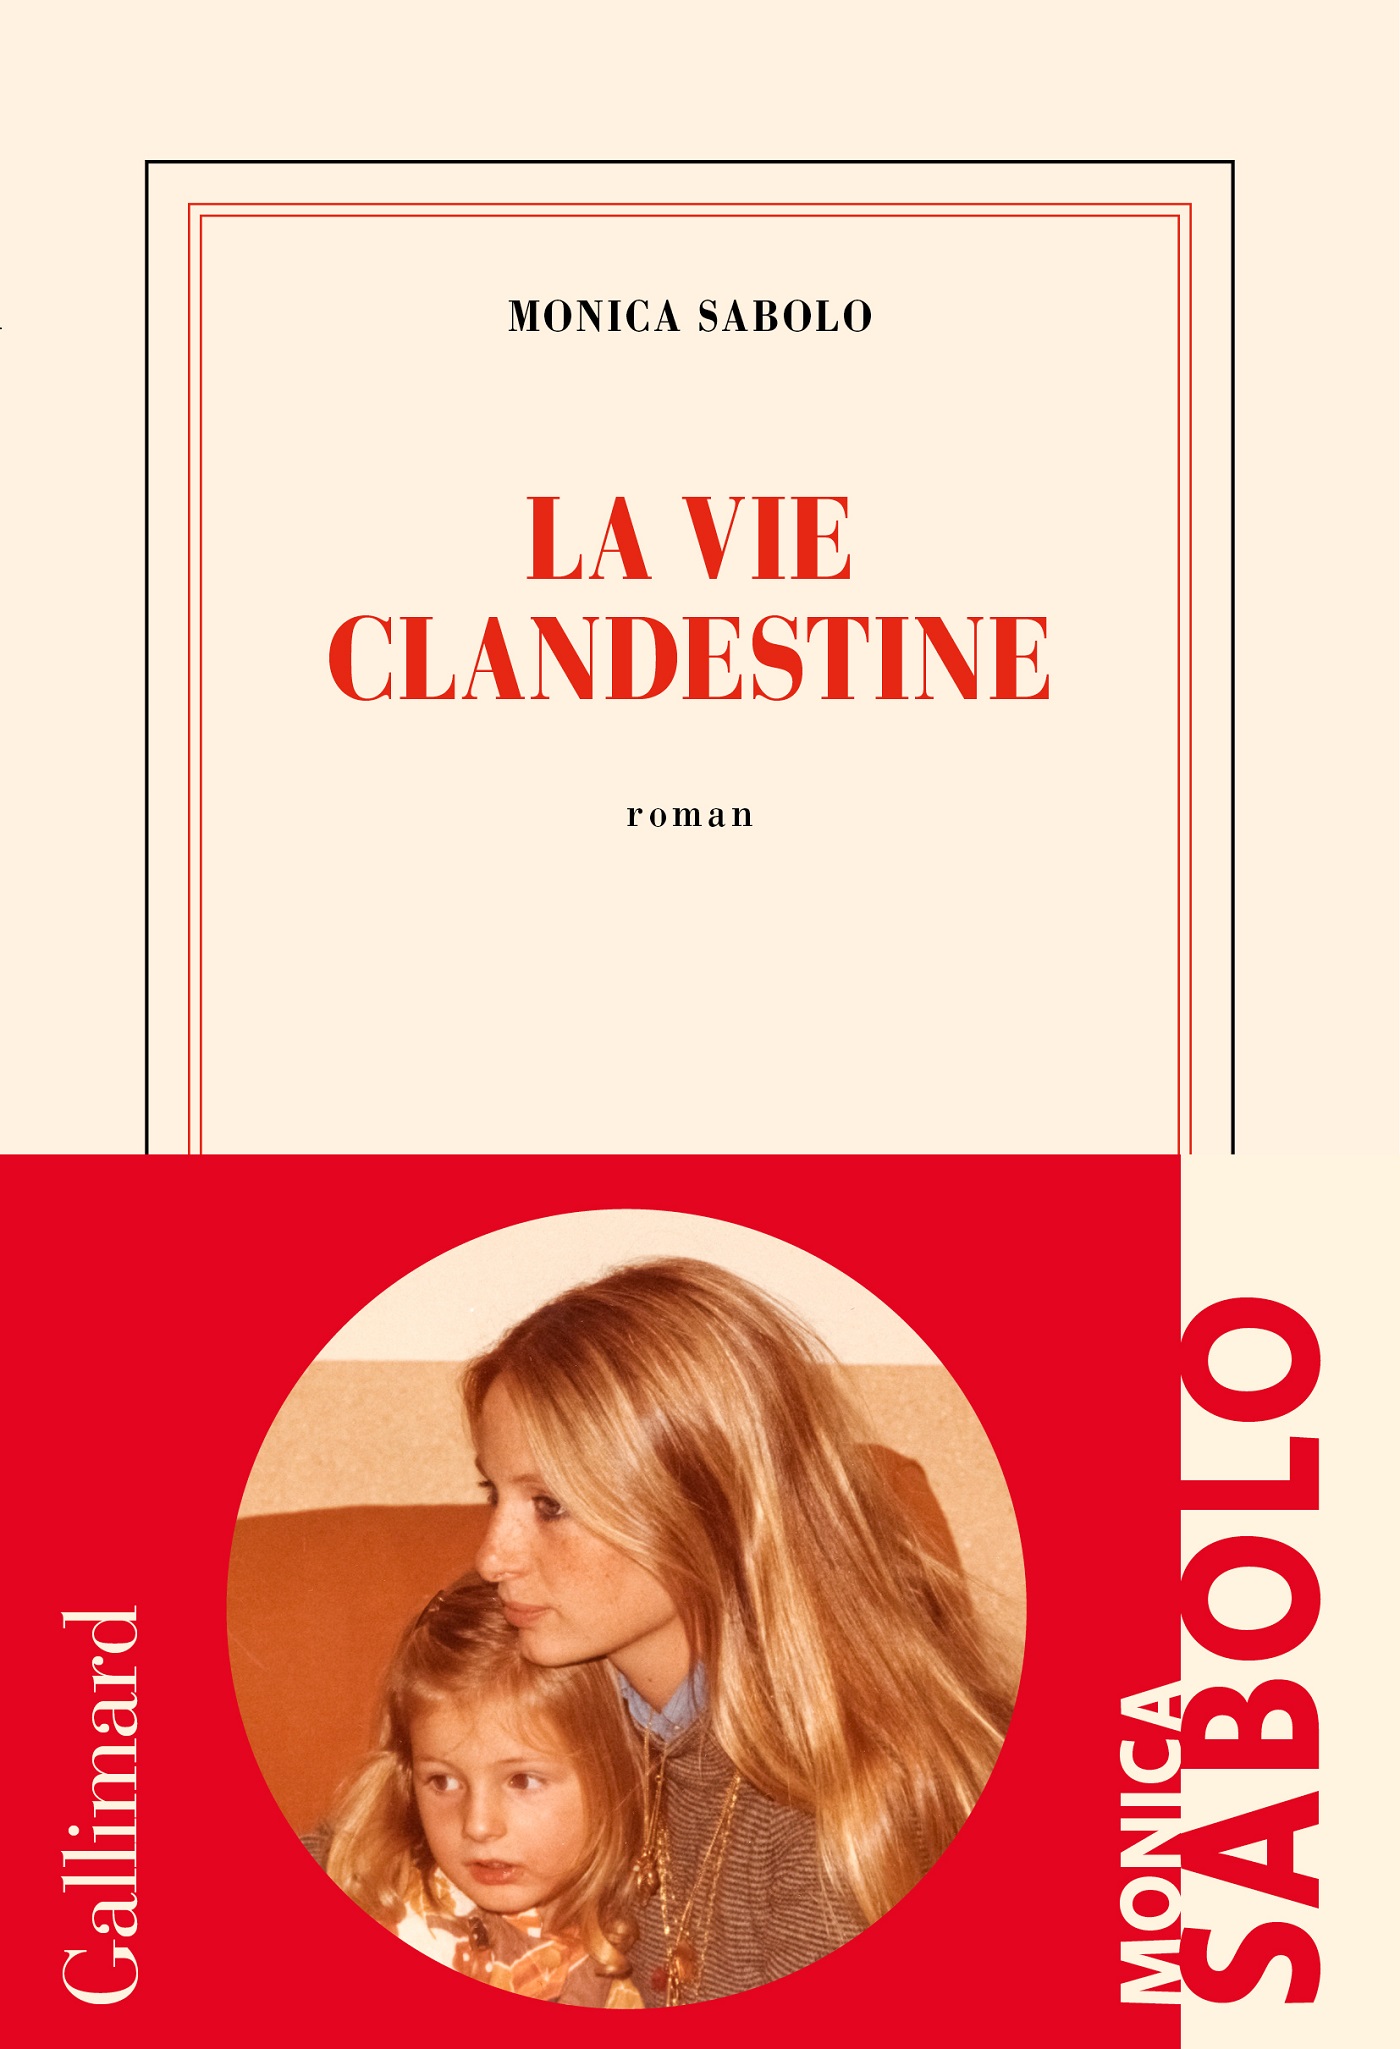 Afficher "La vie clandestine"